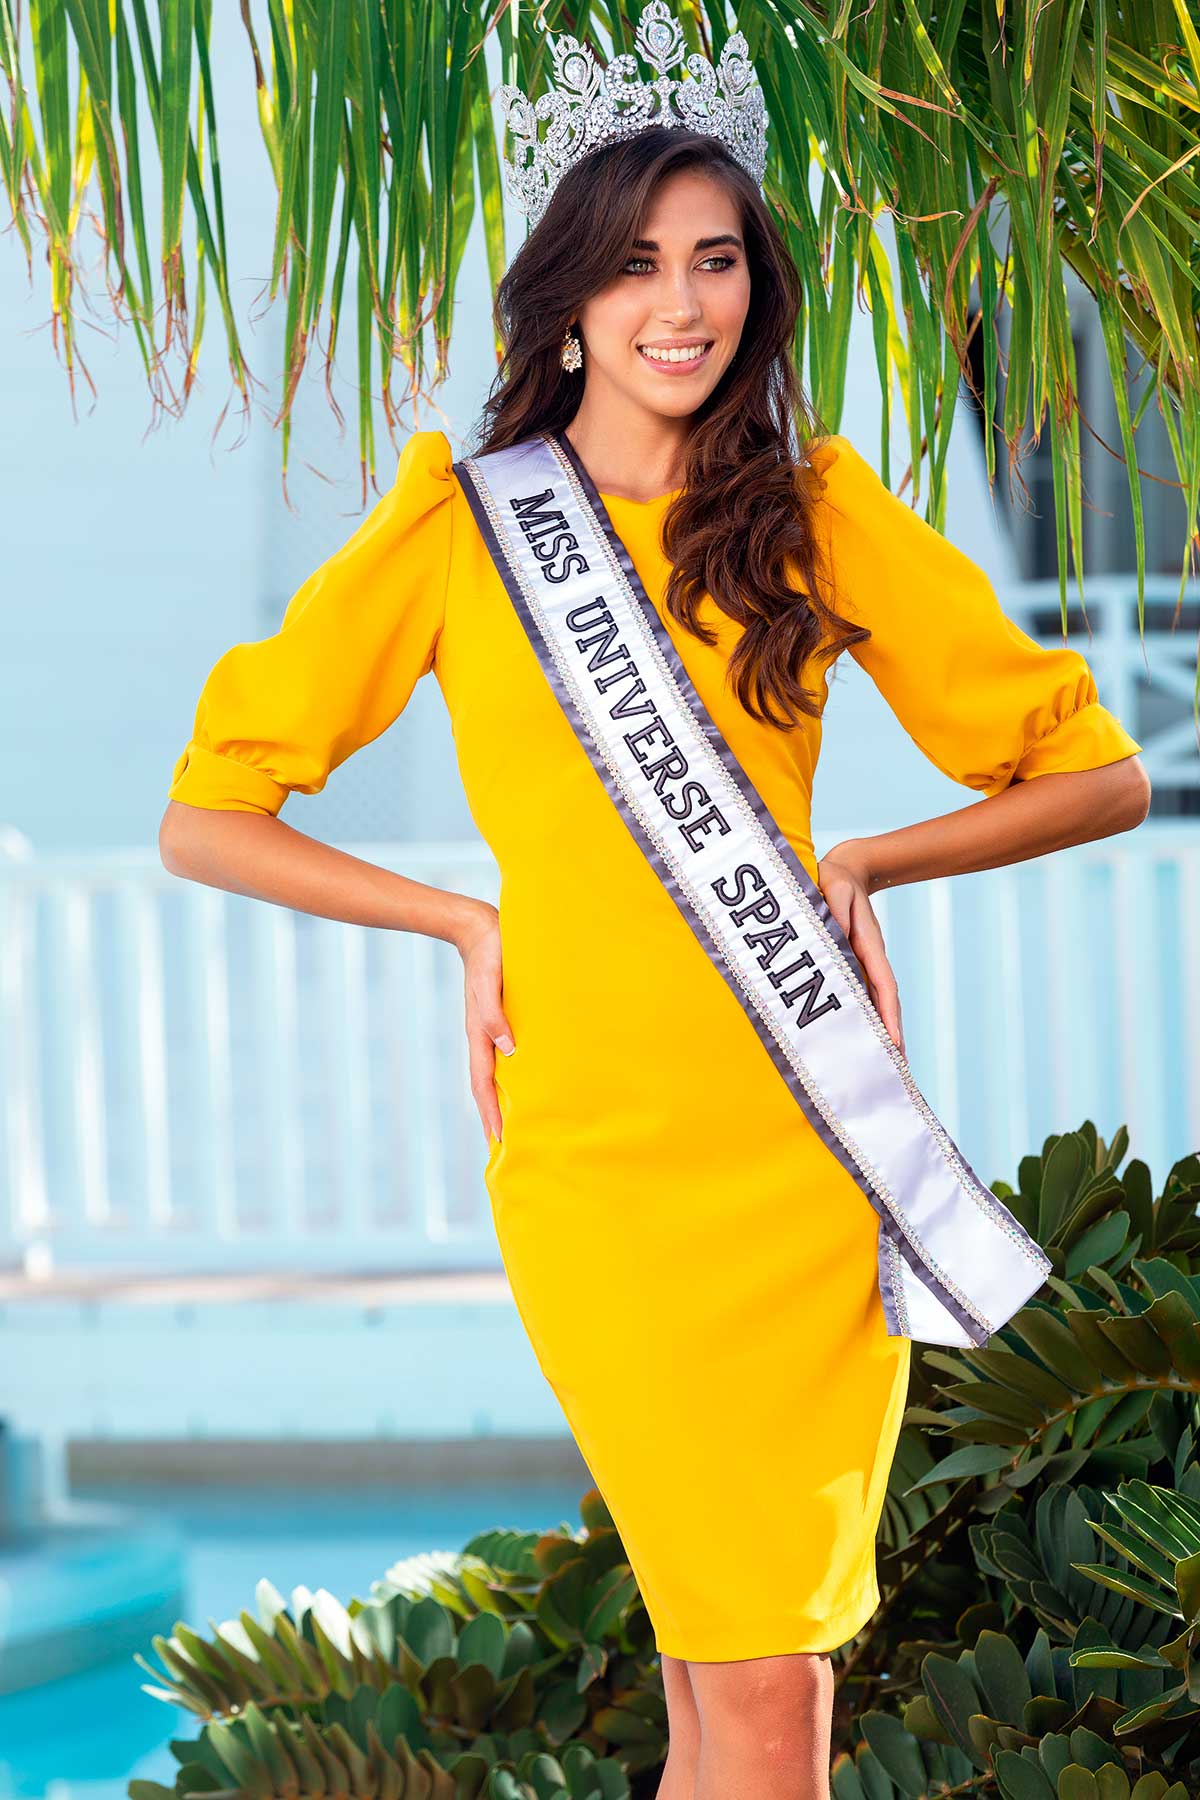 Andrea Martínez, tras coronarse Miss Universo 2020: “Ha sido el despertar más bonito de mi vida”